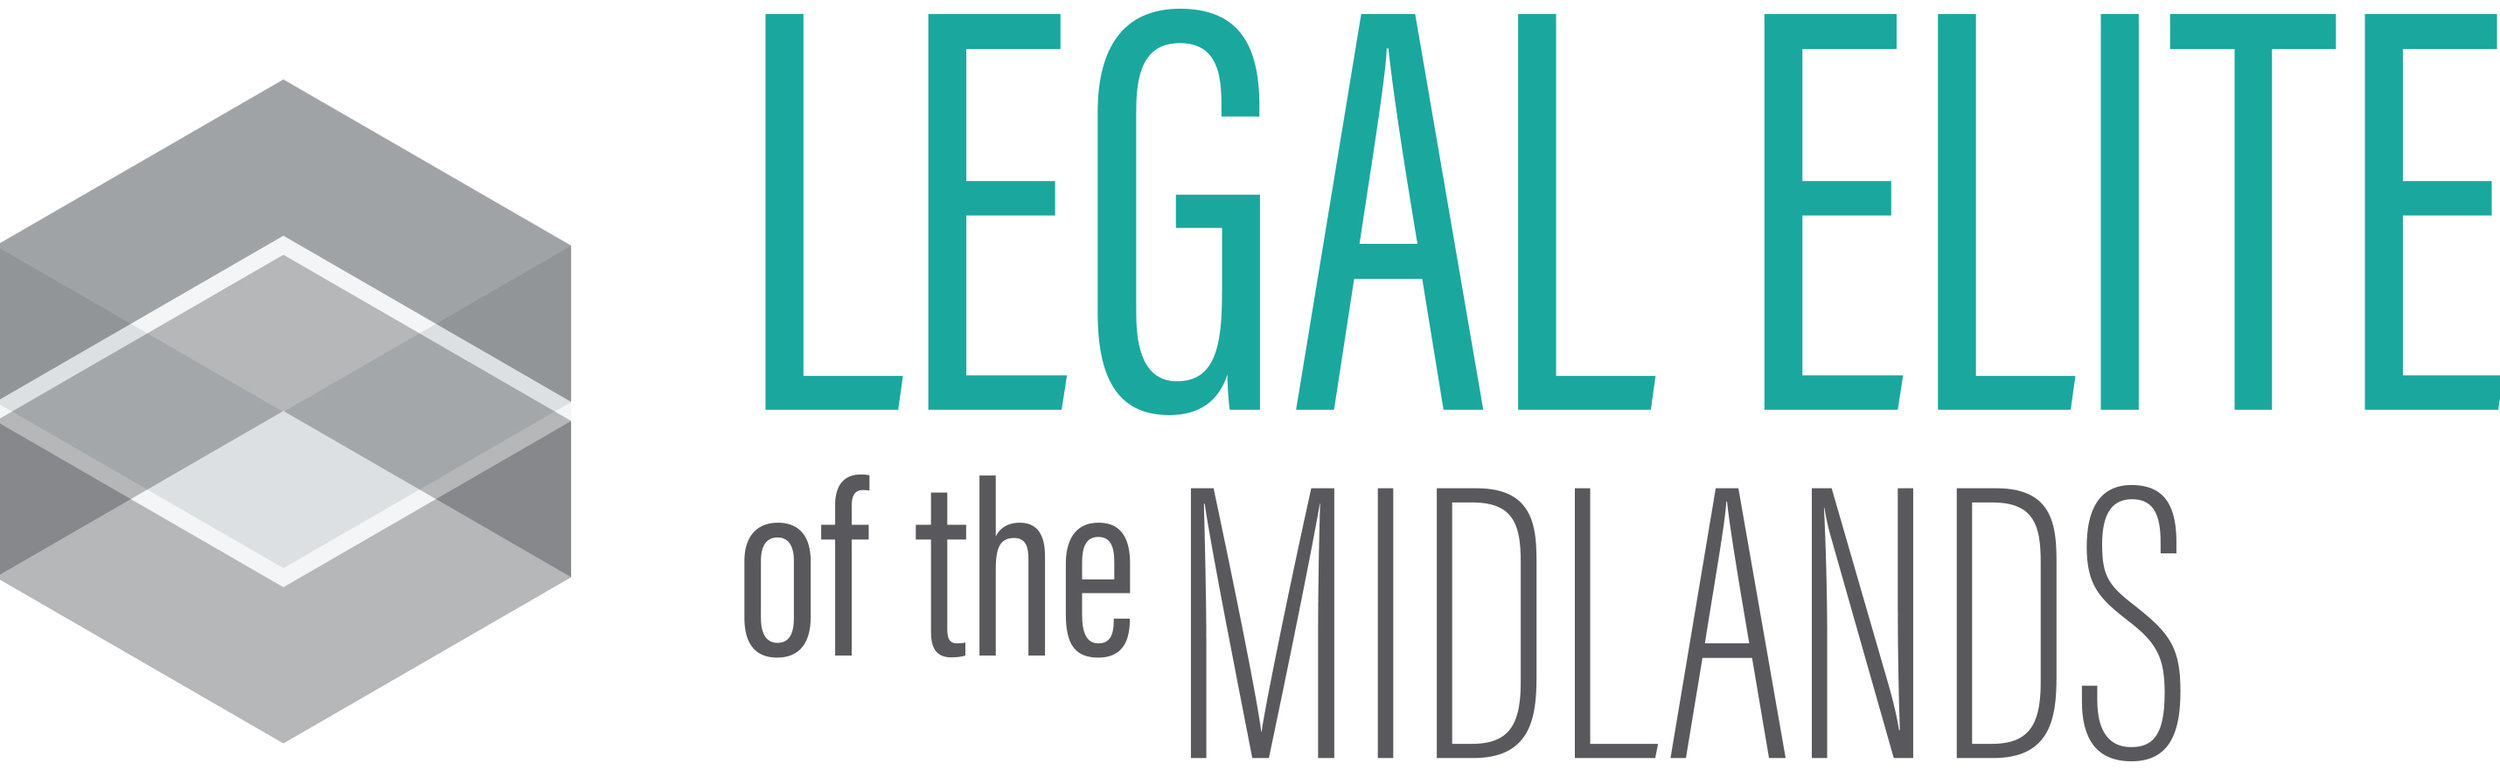 Legal-Elite-Logo-Midlands.jpg